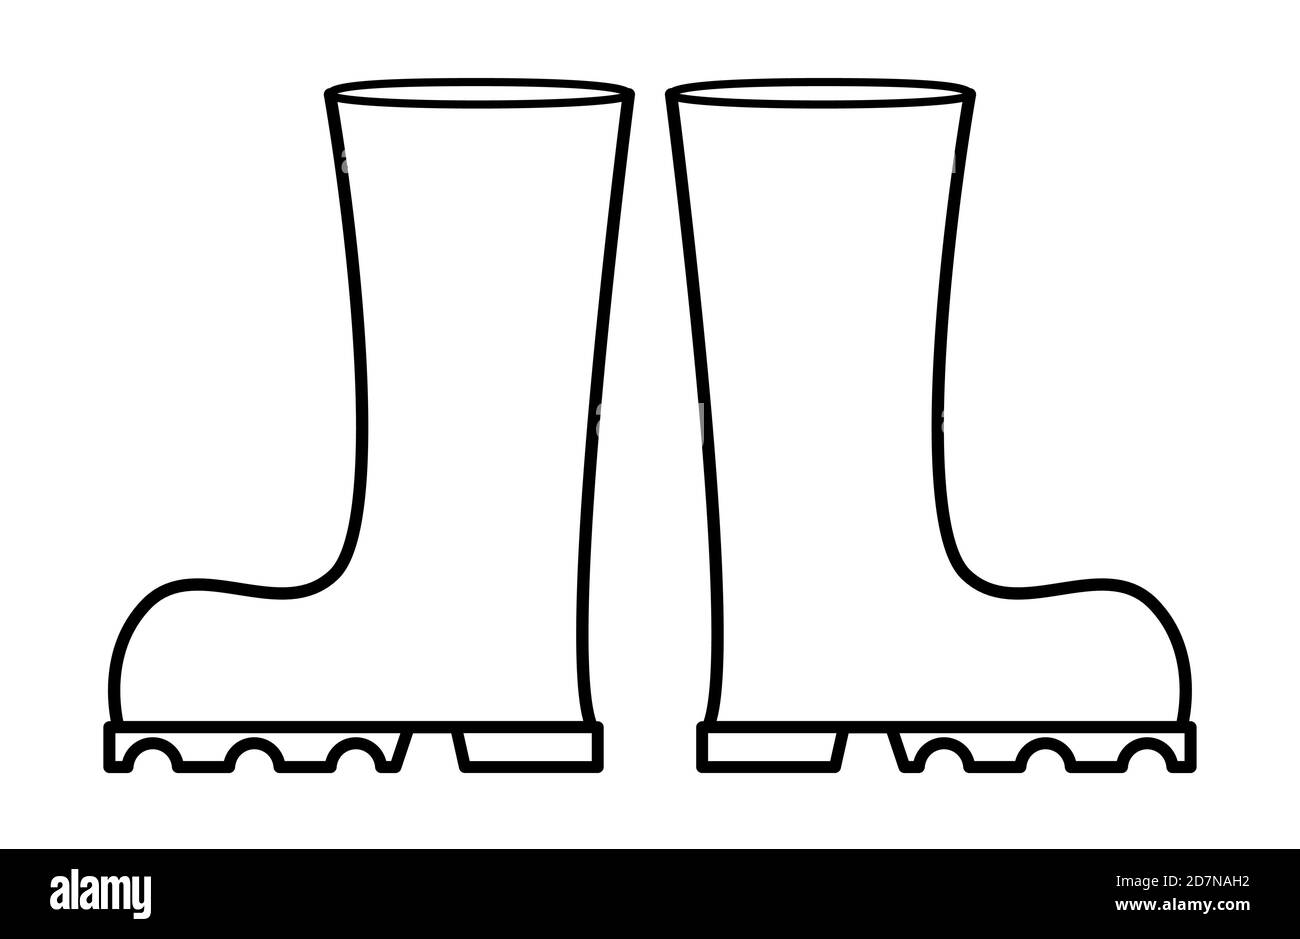 Gummistiefel umreißen Vektor-Design. Abbildung der Gummistiefel-Kontur isoliert auf weißem Hintergrund. Stock Vektor